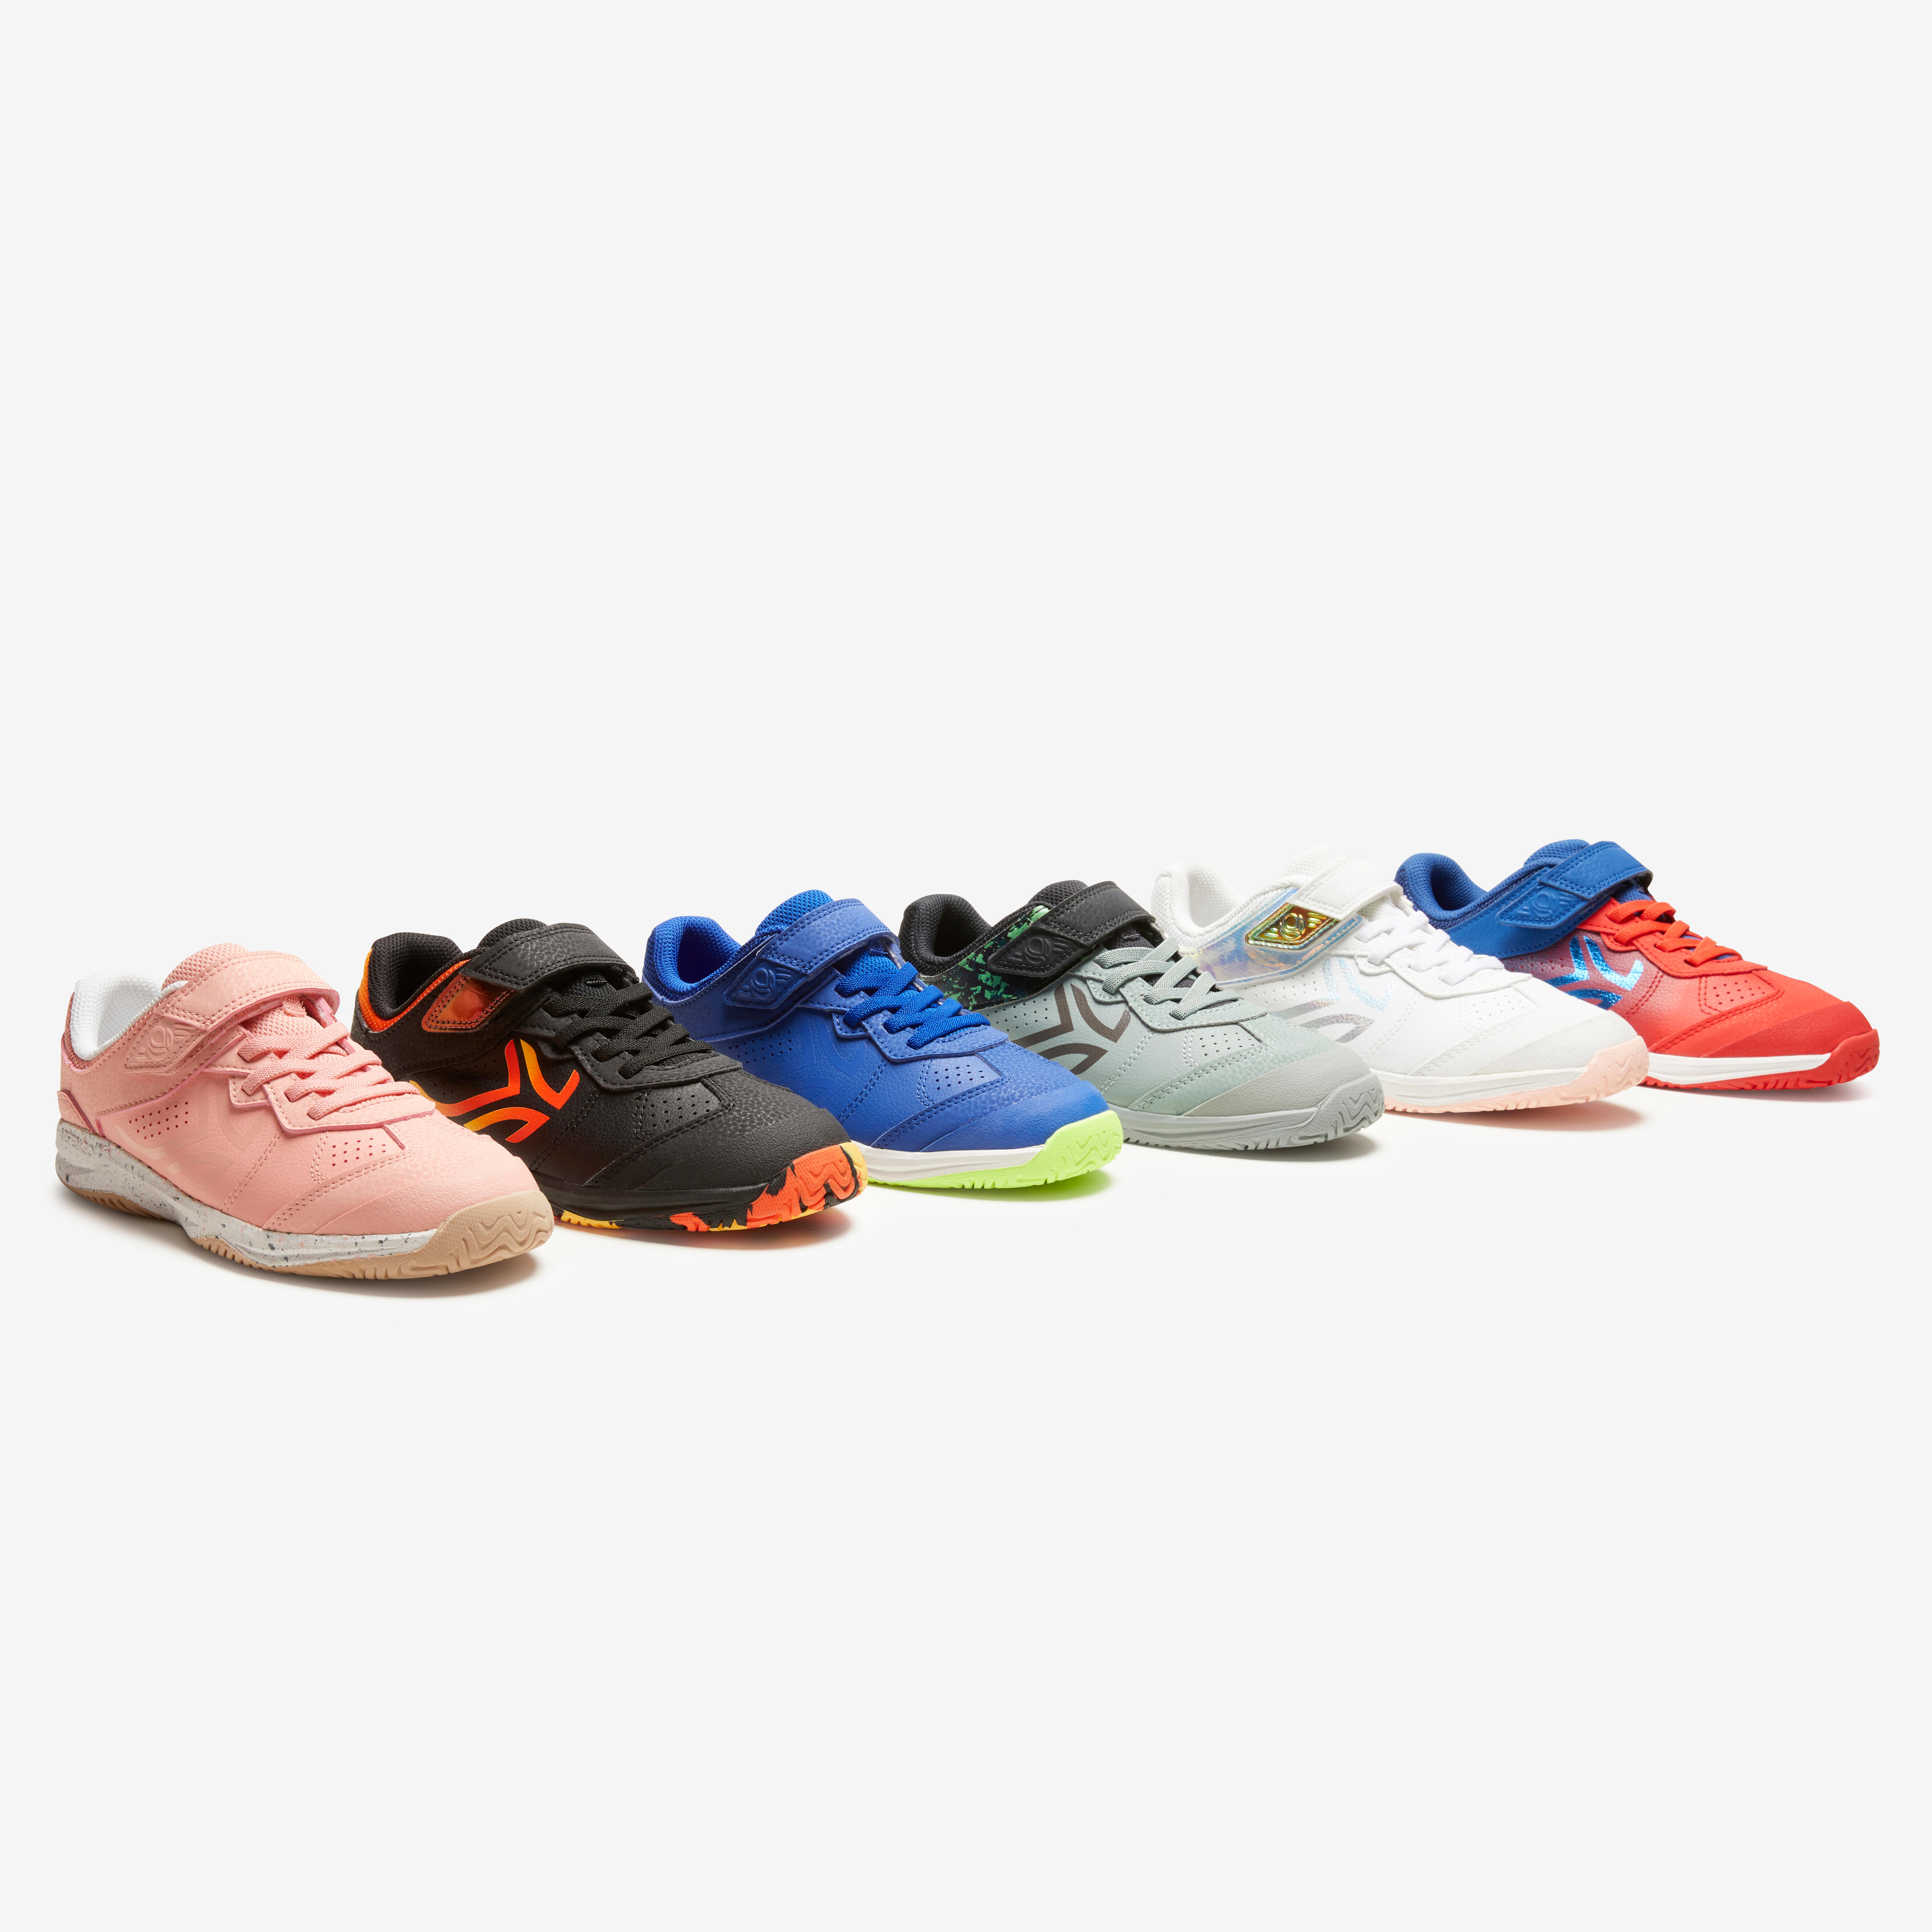 Chaussures de sport enfant – TS 160 rouge - DECATHLON